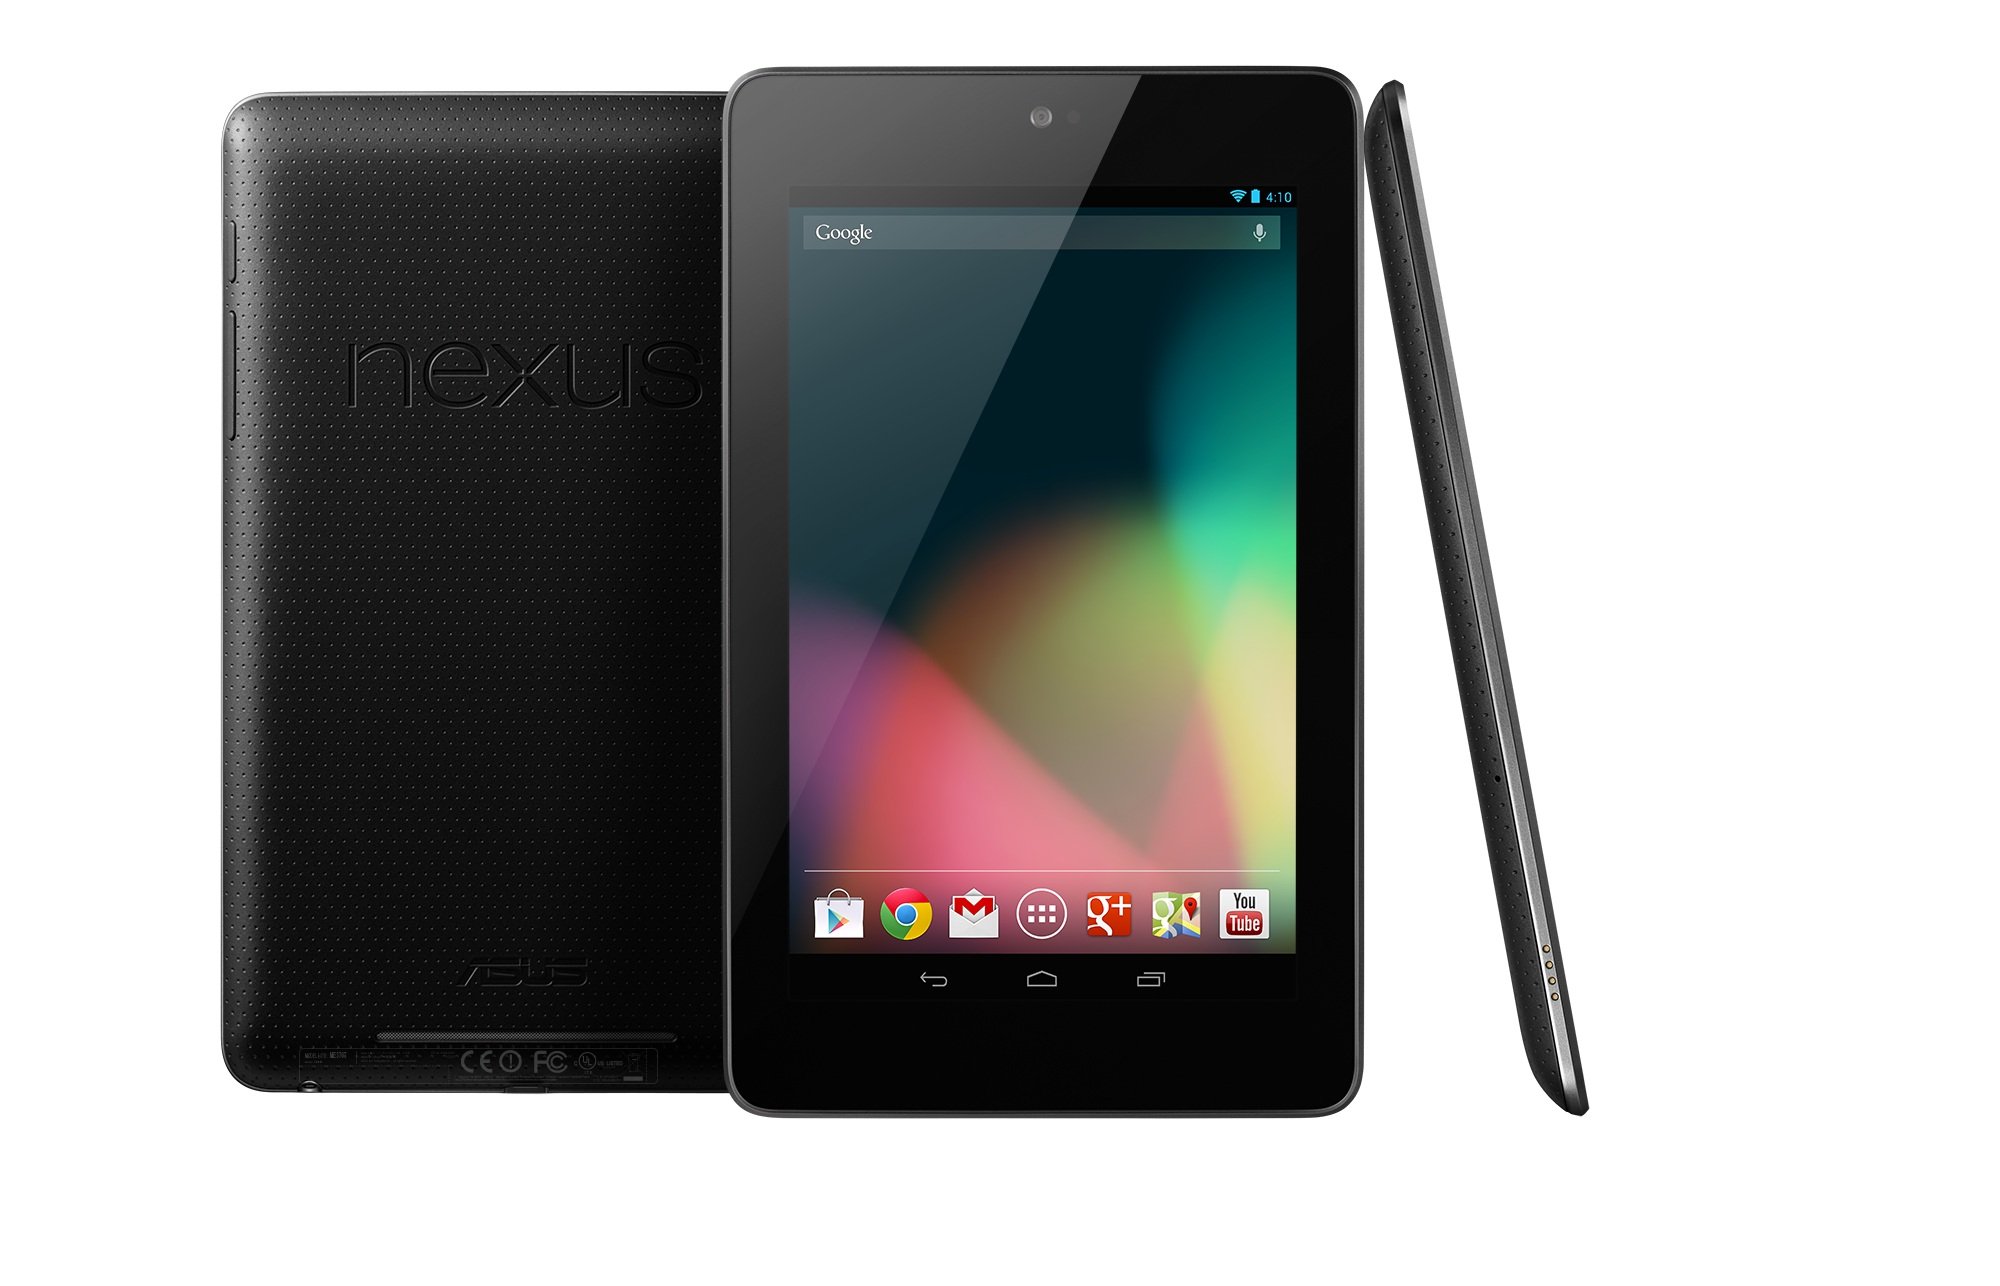 Asus Google Nexus 7 32gb Review